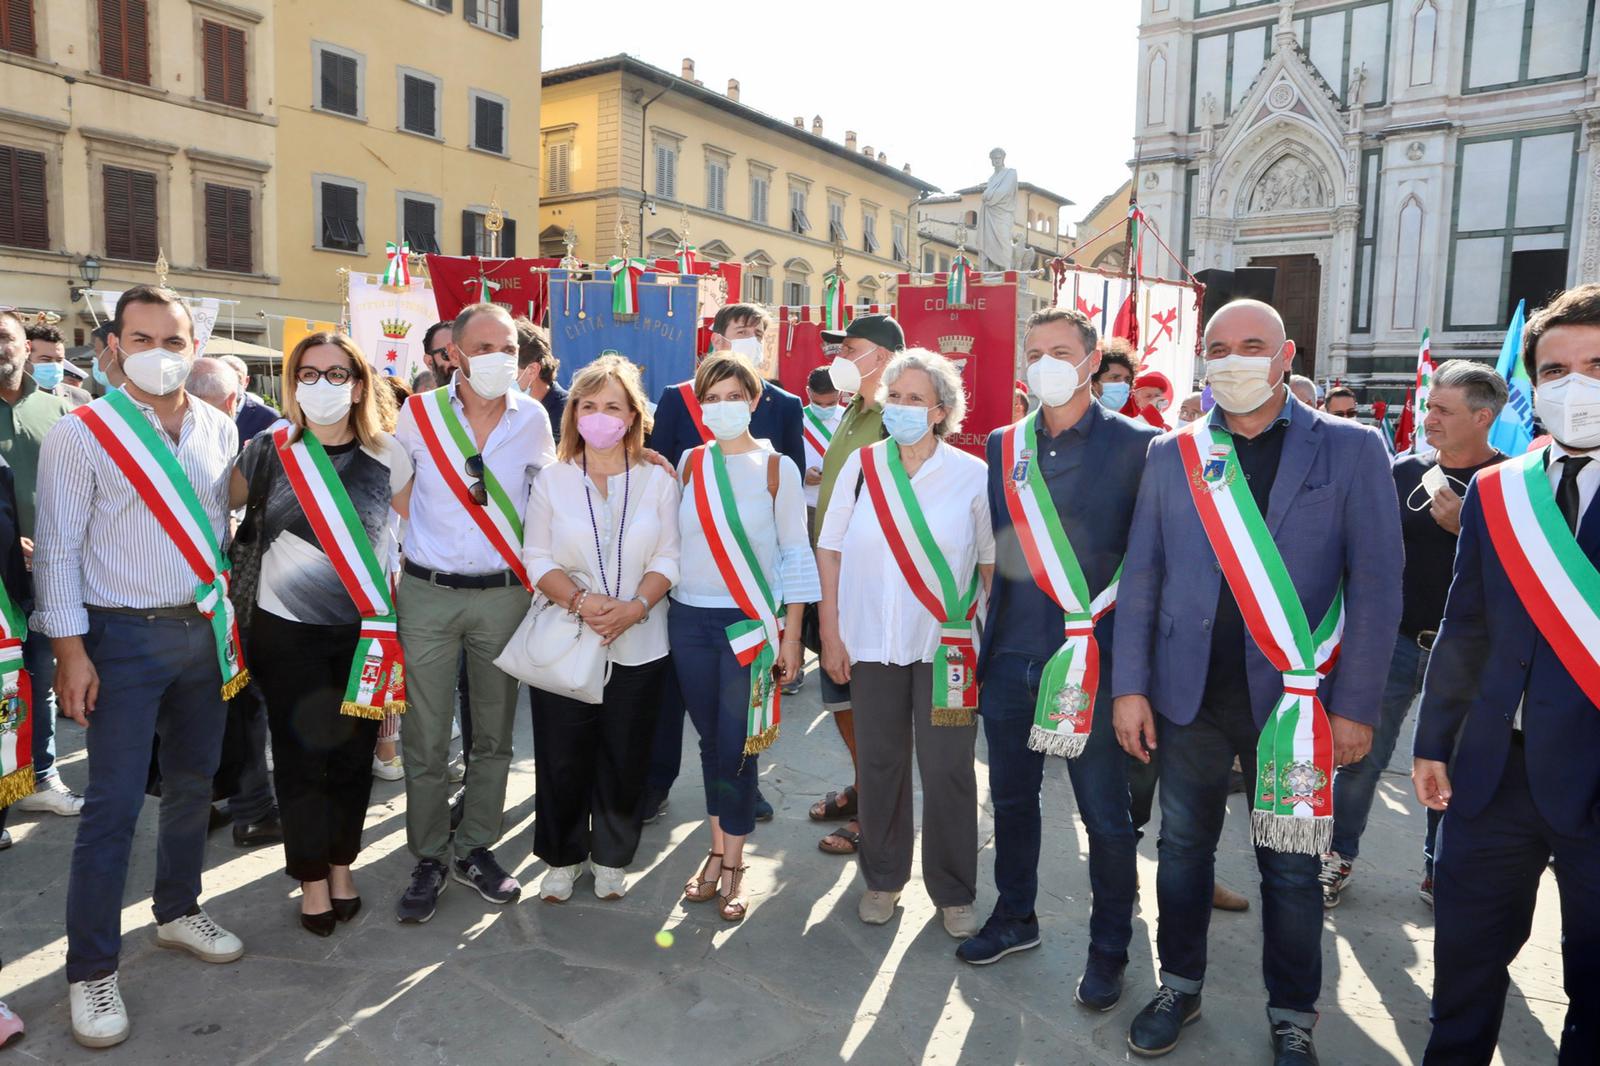 Sindaci dell'Empolese Valdelsa in piazza Santa Croce a Firenze per sostenere le lavoratrici e i lavoratori della GKN